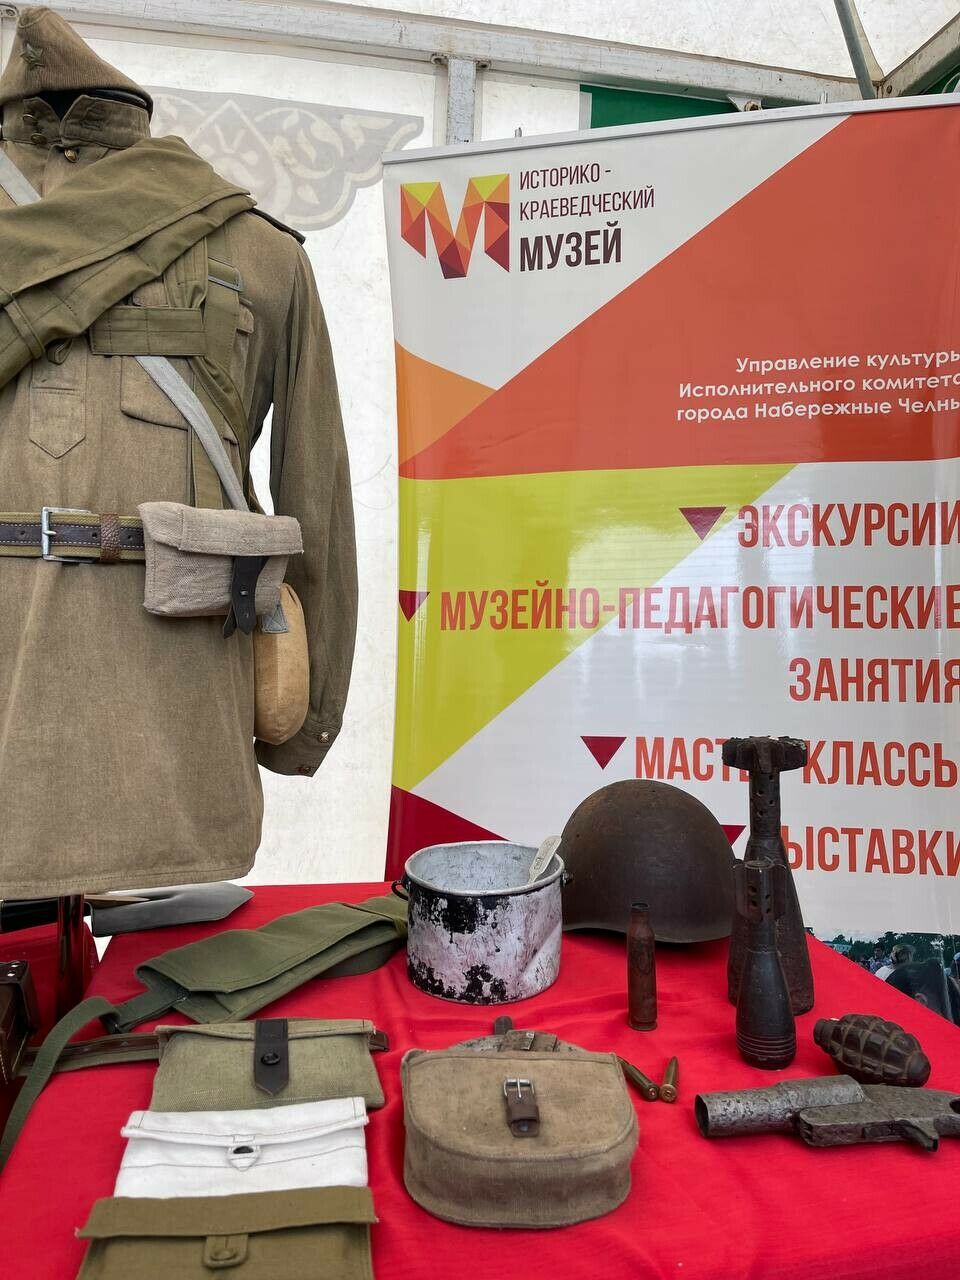 Волонтер из Челнов Рустам Гатин организовал полевую кухню на военном фестивале